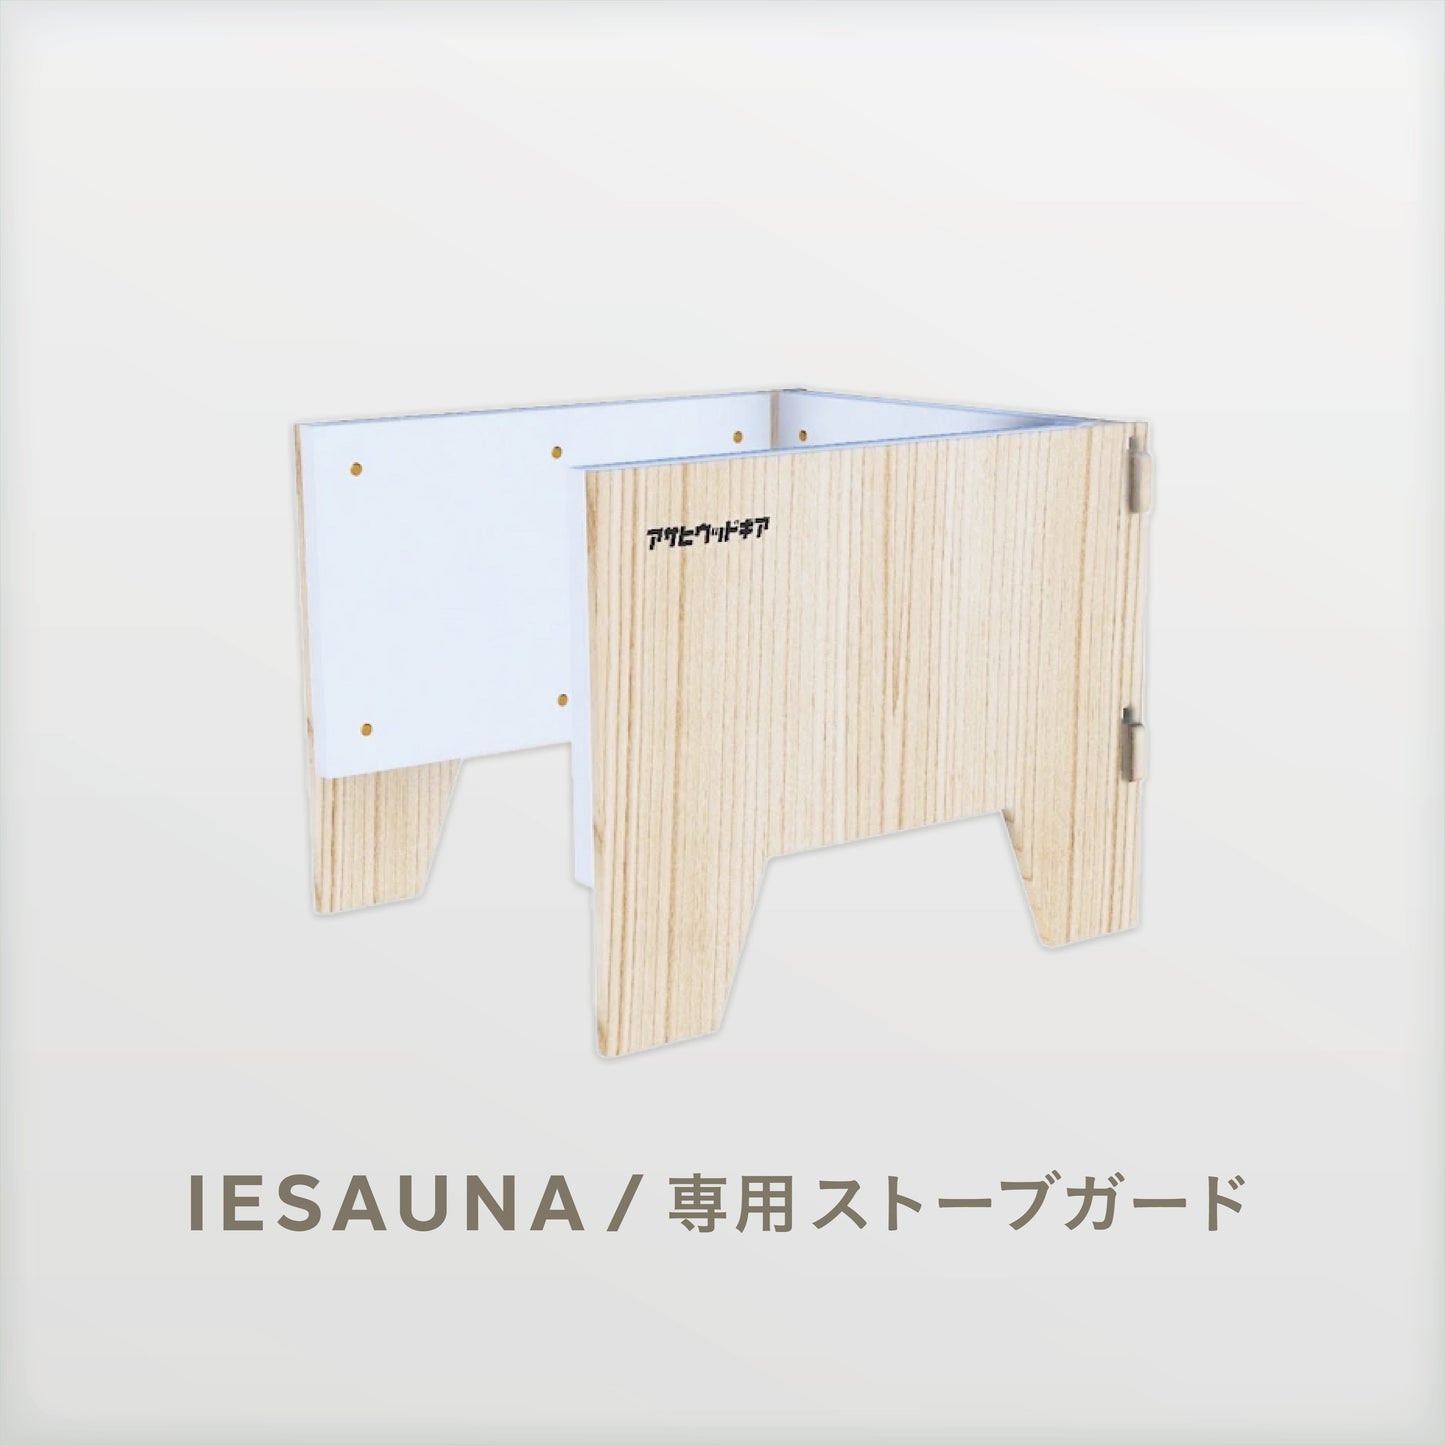 IESAUNA Premium Set／IESAUNA用のストーブを囲むギアセット